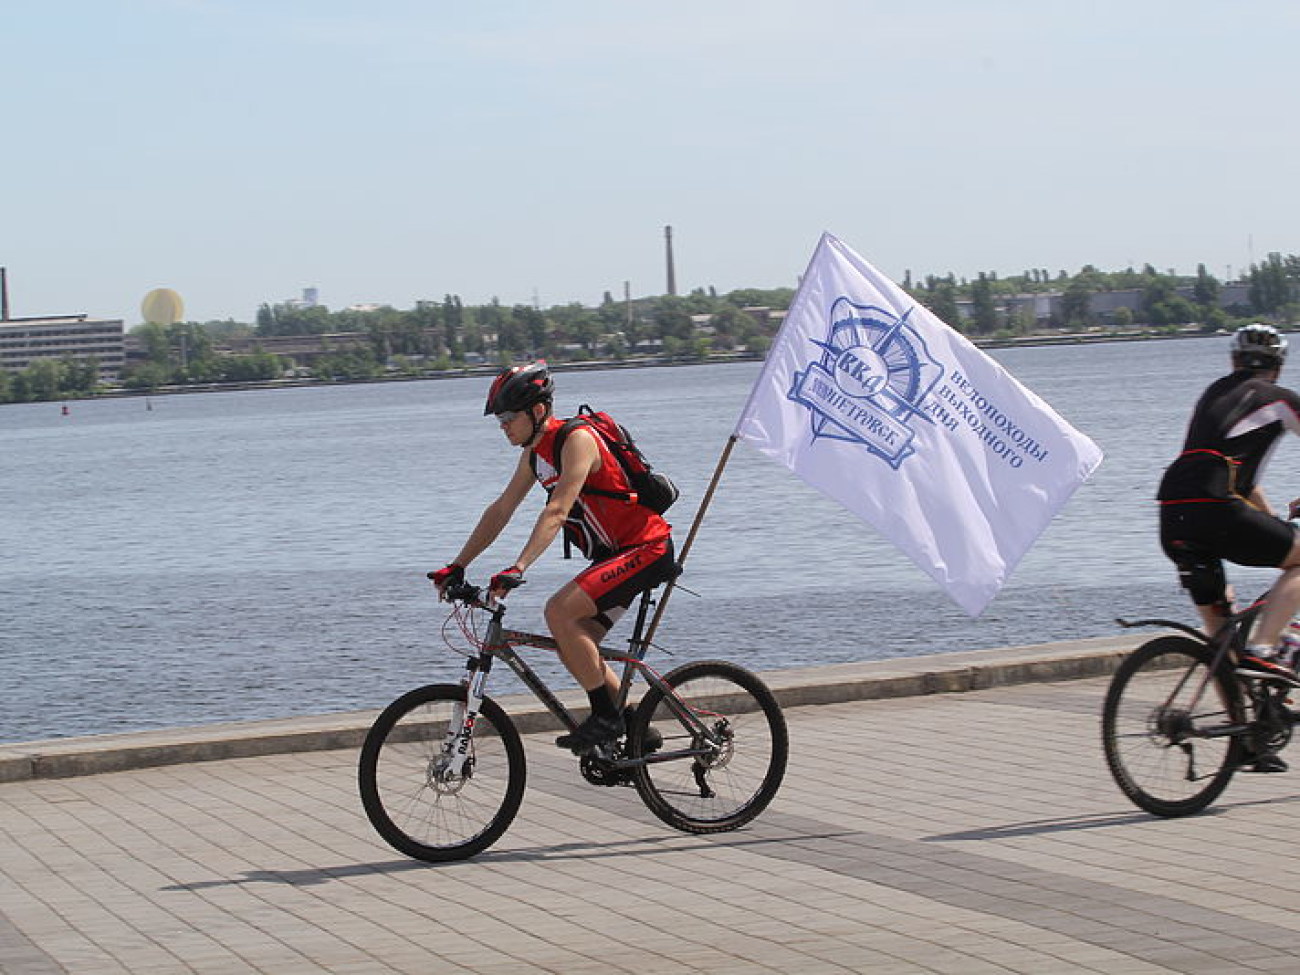 В Днепропетровске прошел «Велодень-2015», 23 мая 2015 г.